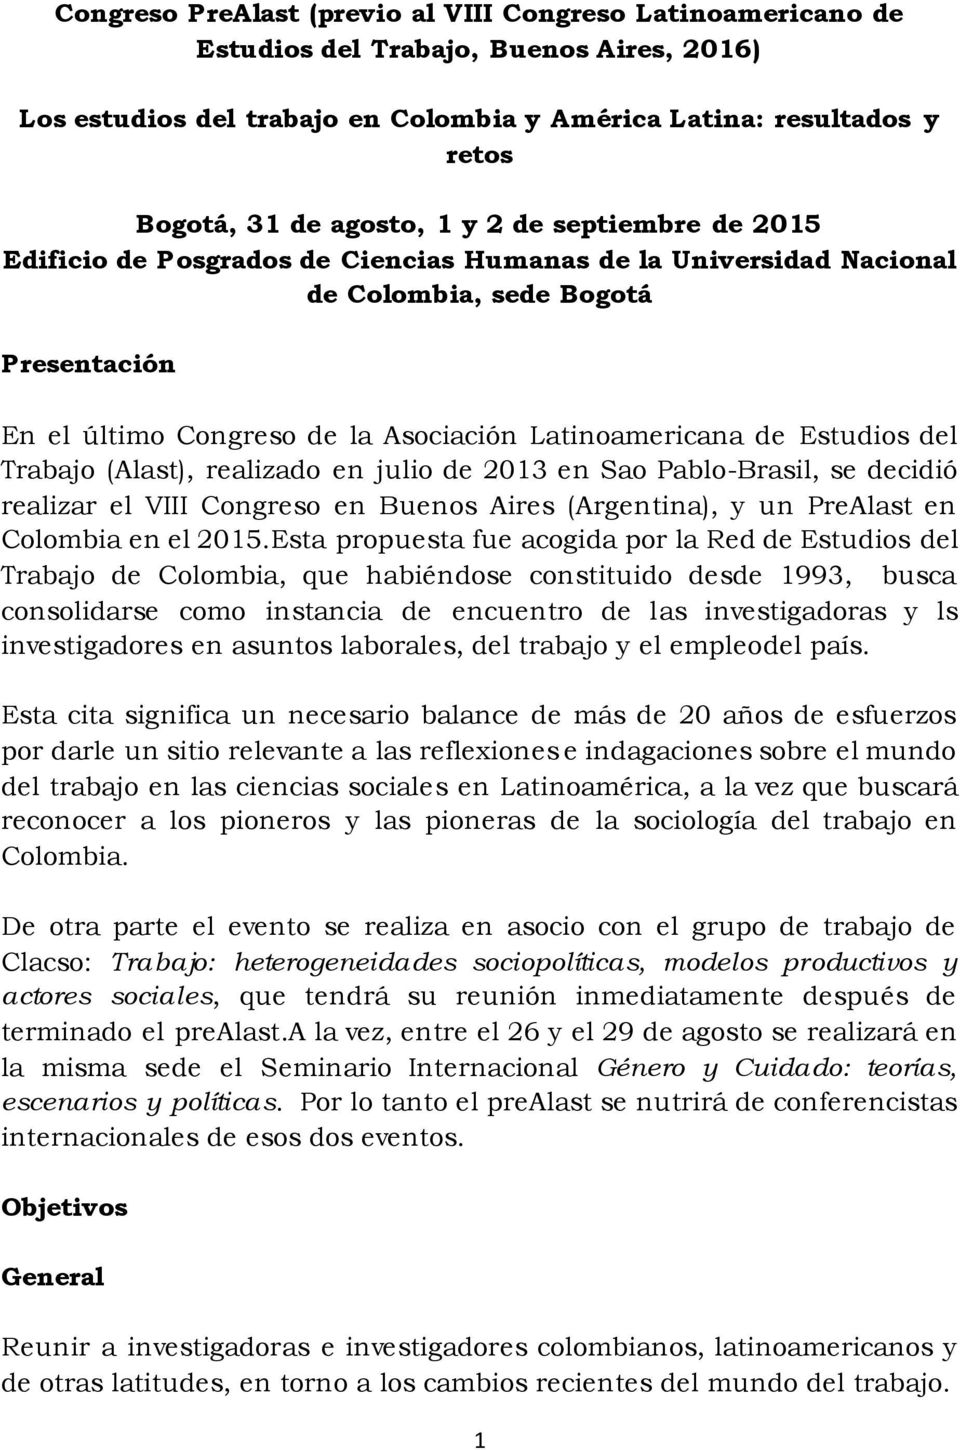 Estudios del Trabajo (Alast), realizado en julio de 2013 en Sao Pablo-Brasil, se decidió realizar el VIII Congreso en Buenos Aires (Argentina), y un PreAlast en Colombia en el 2015.